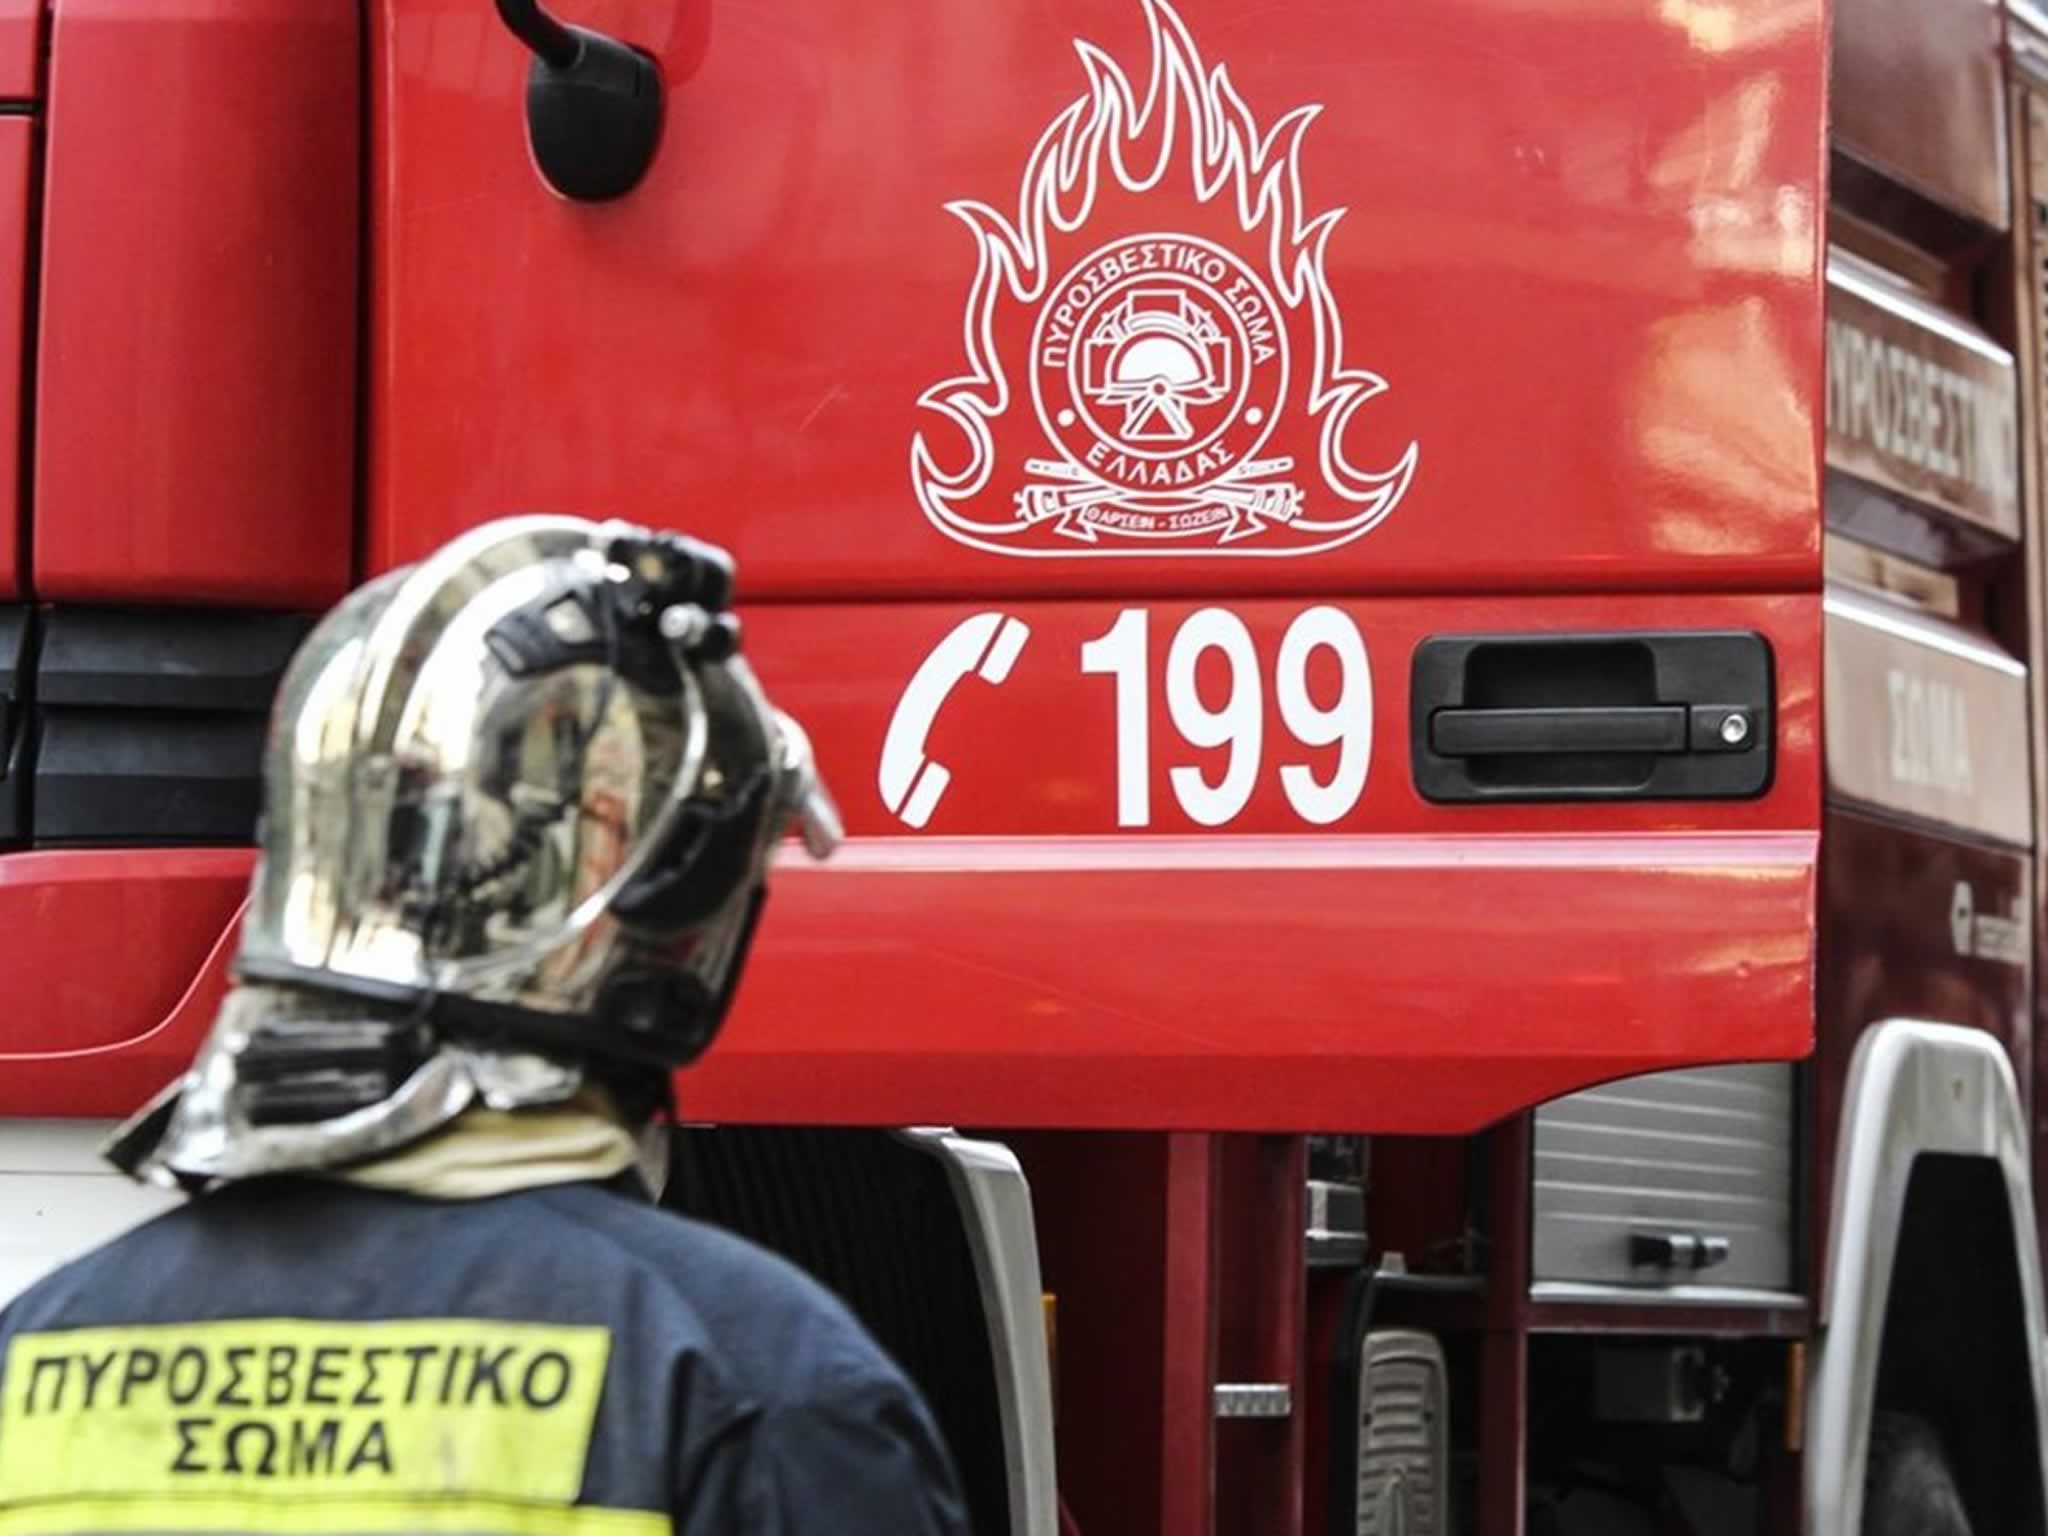 Πυρκαγιά είναι σε εξέλιξη σε διαμέρισμα στην περιοχή της Καλαμαριάς, στην ανατολική Θεσσαλονίκη, με την Πυροσβεστική να επιχειρεί